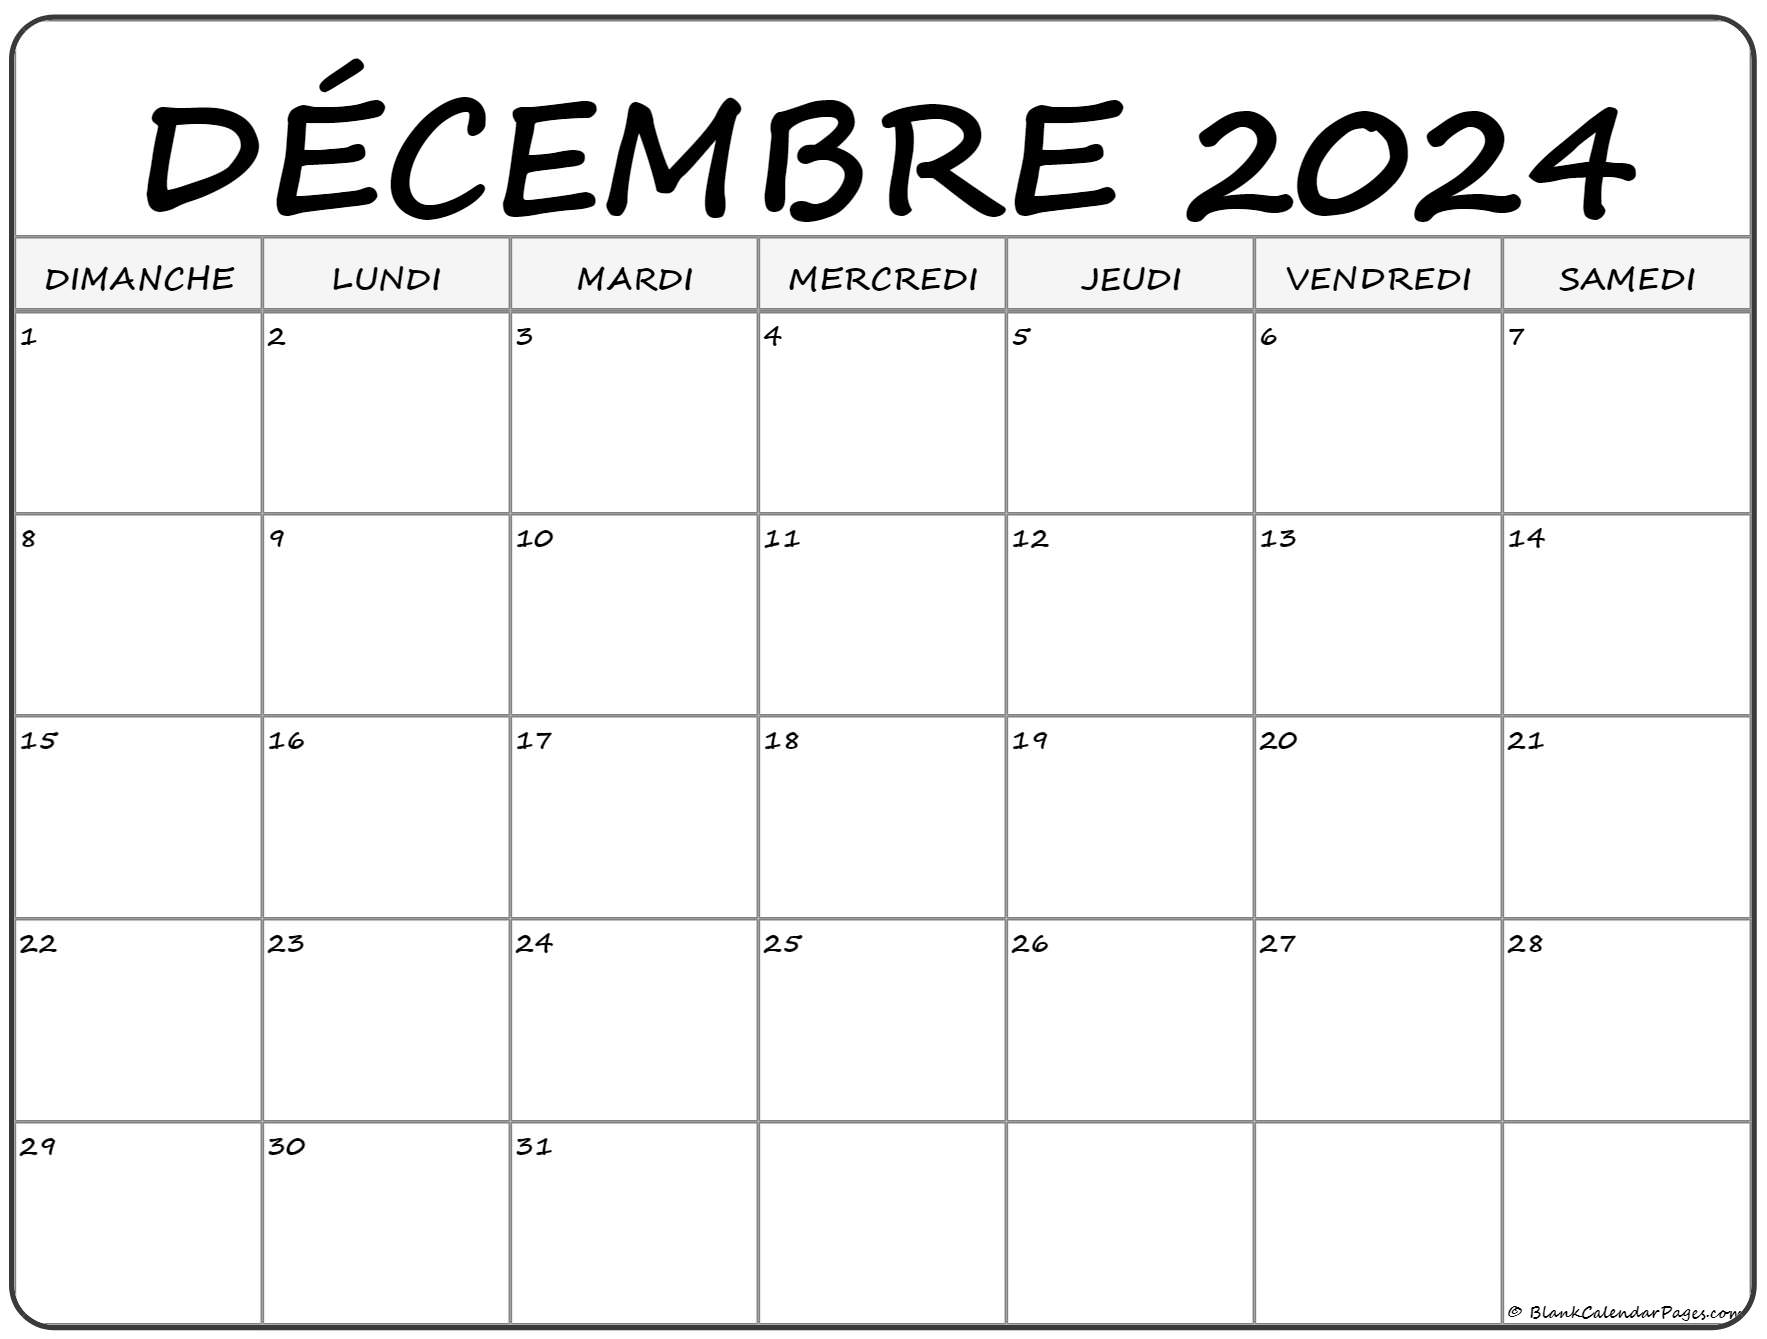 CALENDRIER DECEMBRE 2024 : LE CALENDRIER DU MOIS DE DECEMBRE 2024 GRATUIT A  IMPRIMER - AGENDA